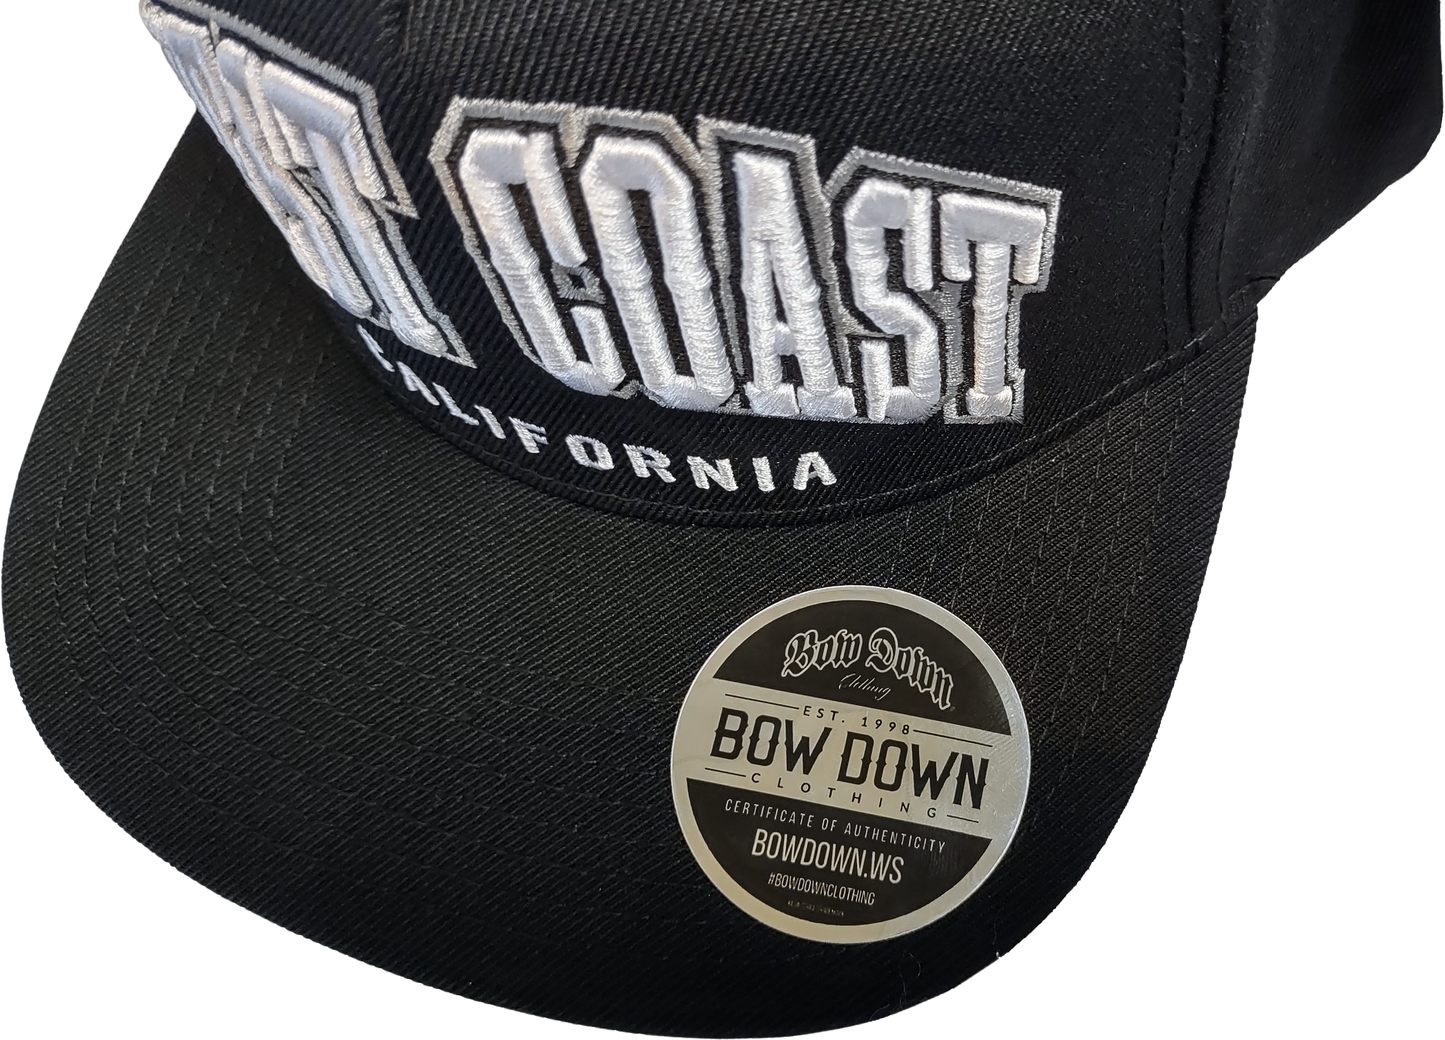 West Coast Snapback Hat